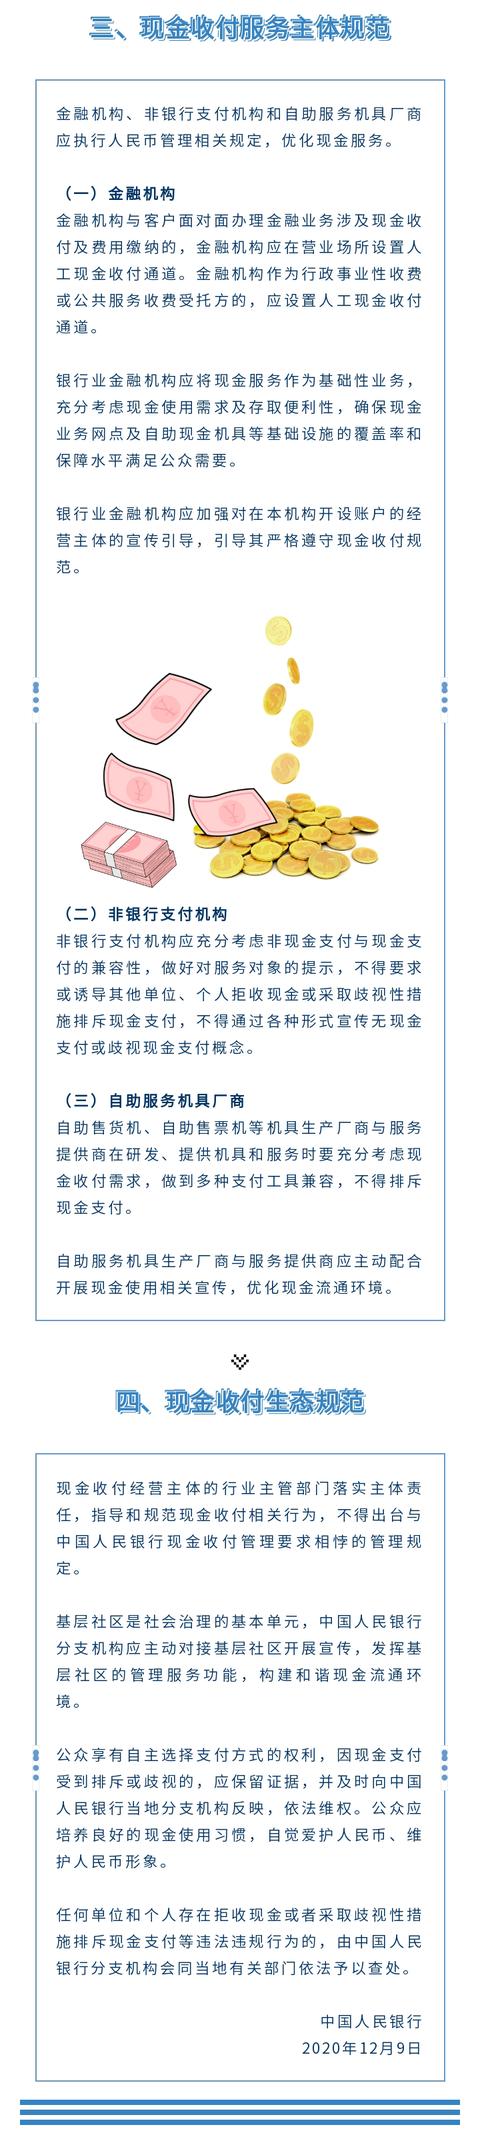 中国人民银行公告图片